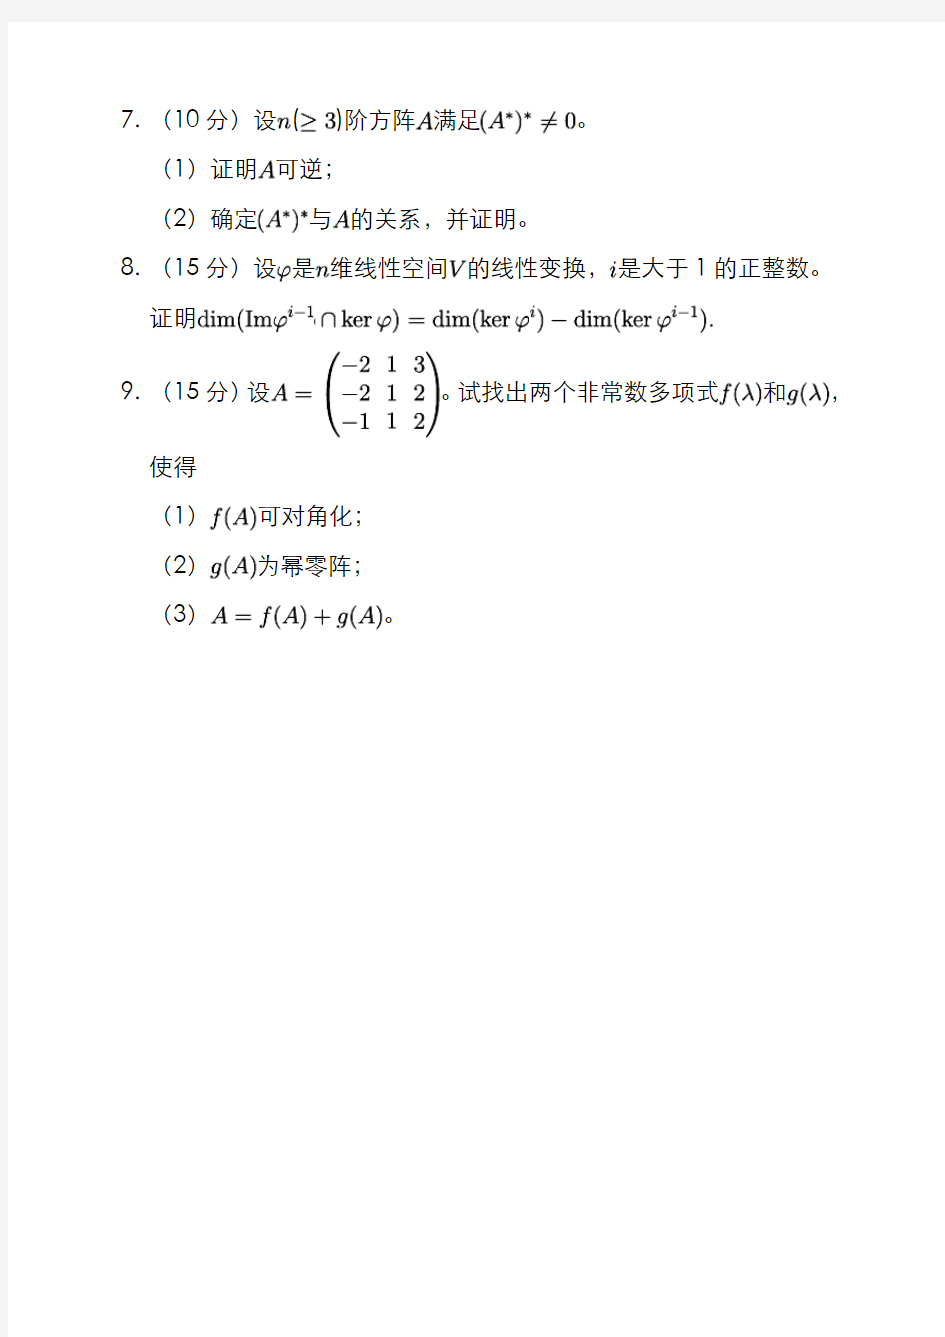 2015景润杯数学竞赛数学类试题